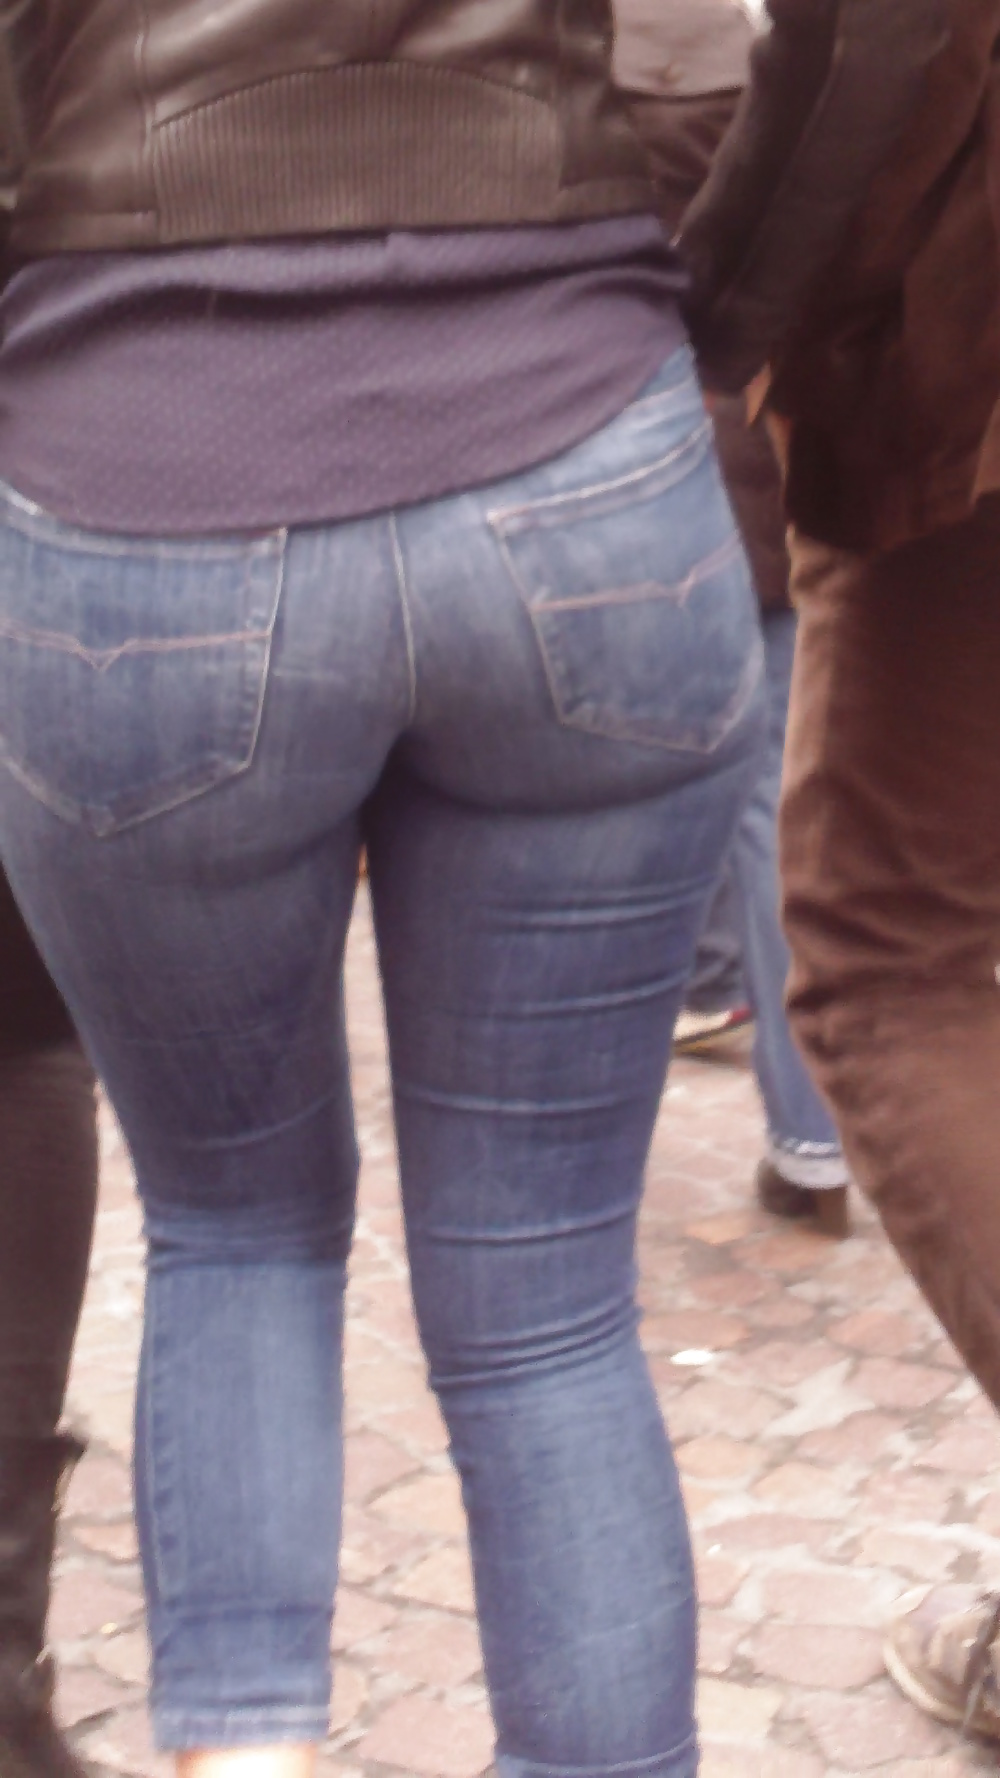 Popular teen girls ass & butt in jeans Part 6 #32010431